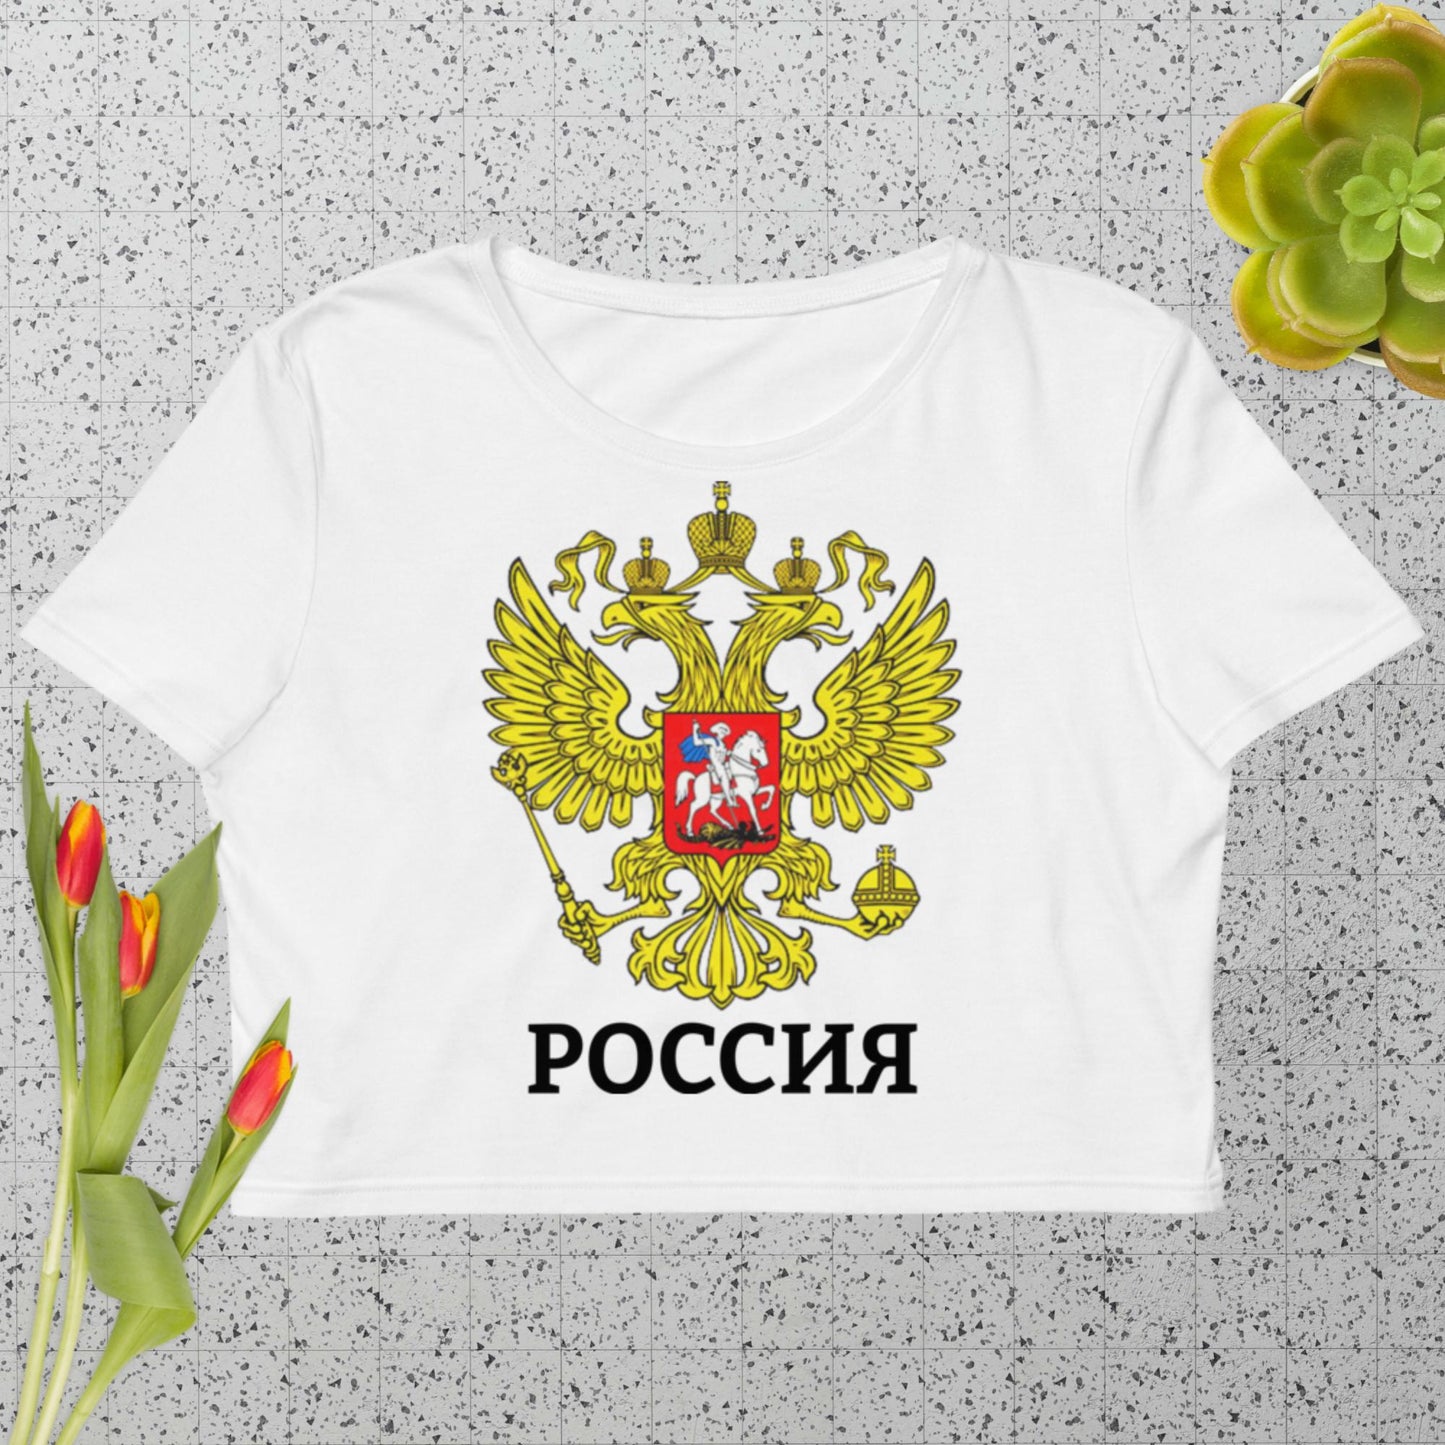 Russland Bio-Crop-Top bauchfrei weiß